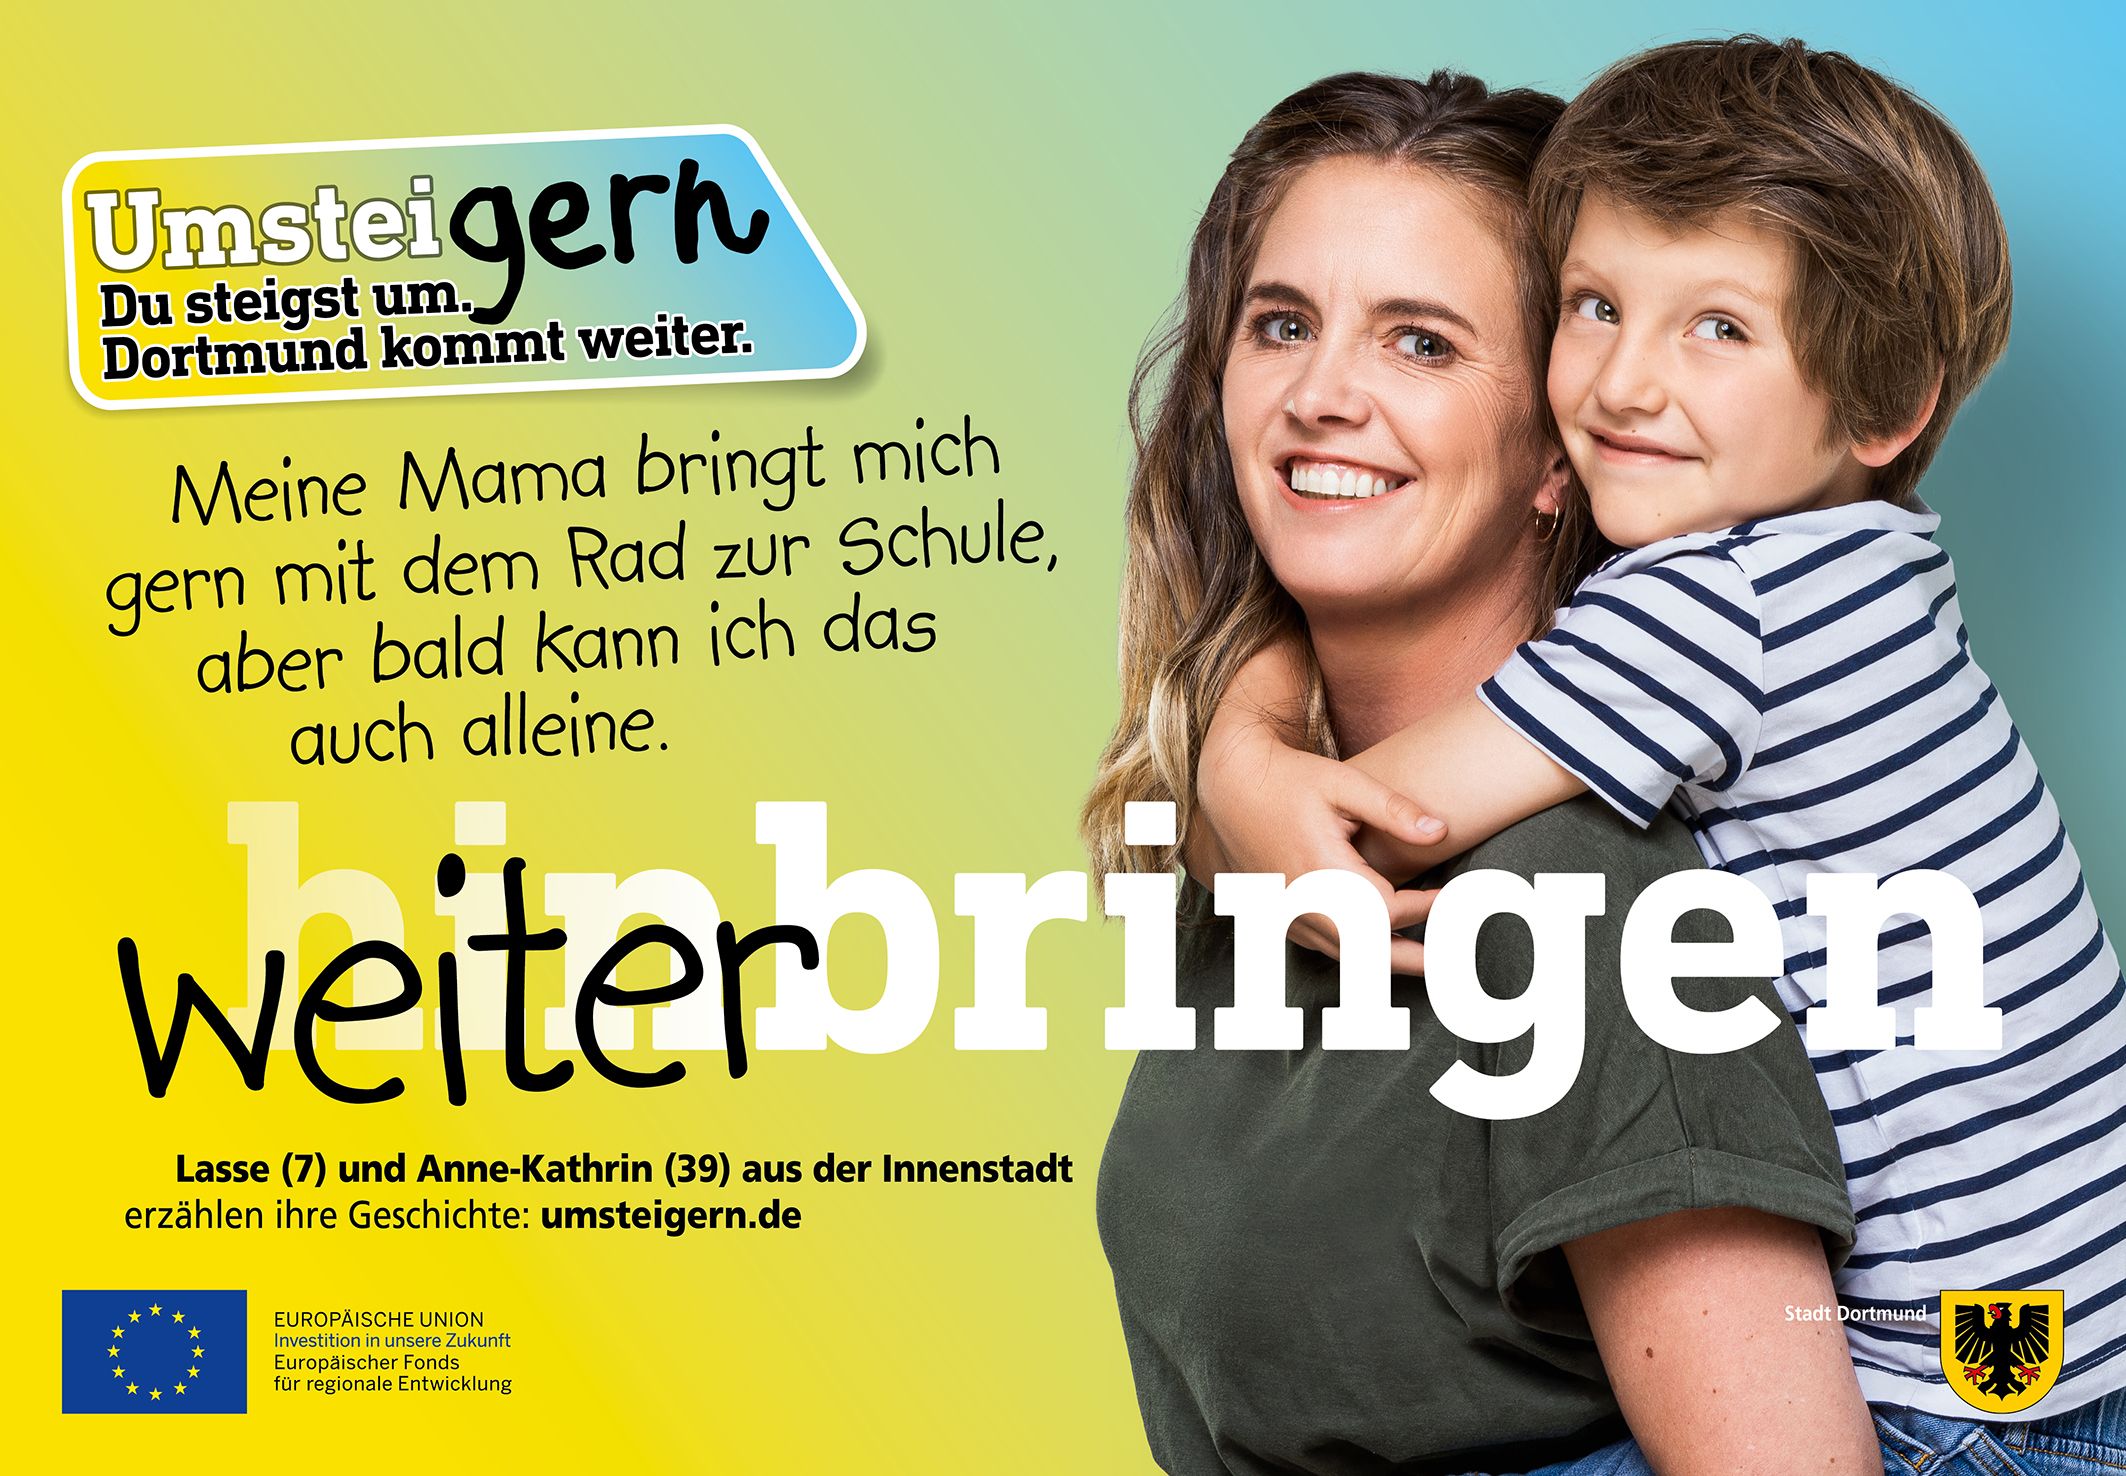 Plakat mit UmsteiGERN-Botschafterin Anne-Kathrin und ihrem Sohn Lasse